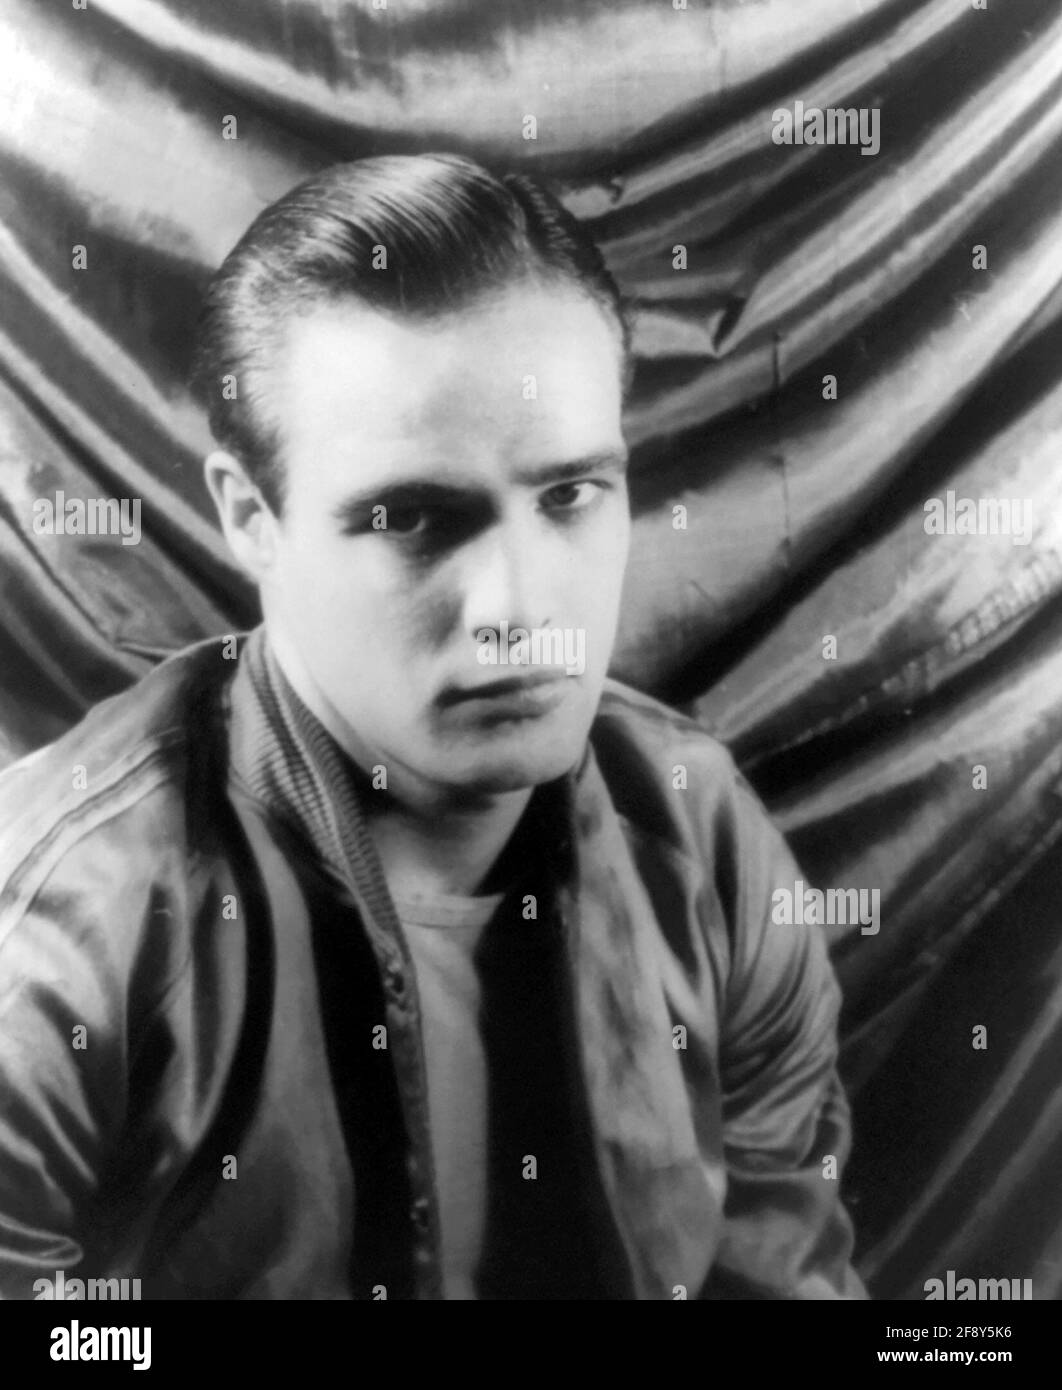 Marlon Brando. Ritratto dell'attore e regista americano Marlon Brando Jr. (1924-2004) in "UNA Streetcar chiamata Desire". Foto di Carl van Vechten, 1948 Foto Stock